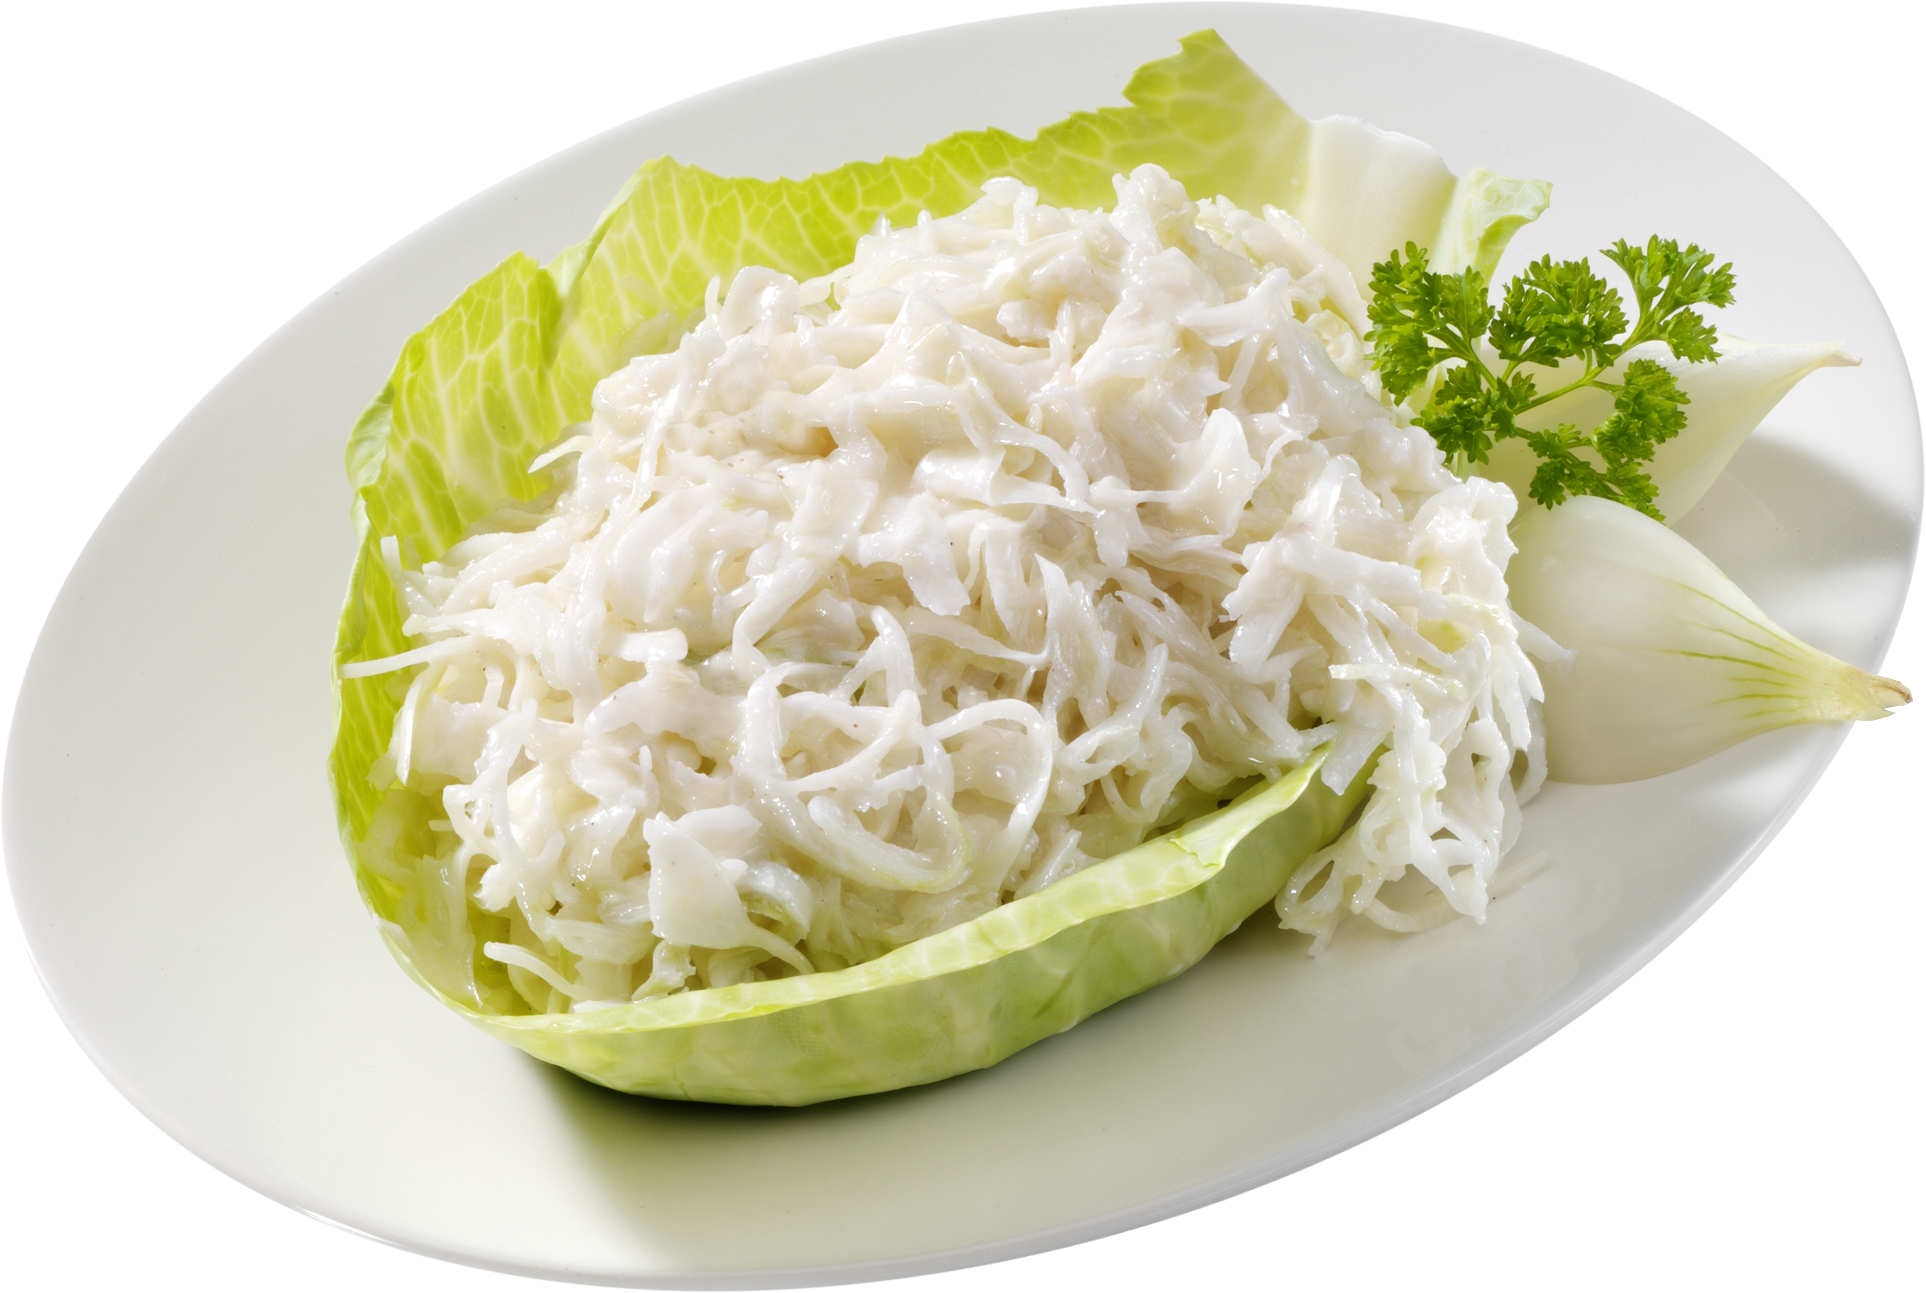 Sahne-Kraut-Salat